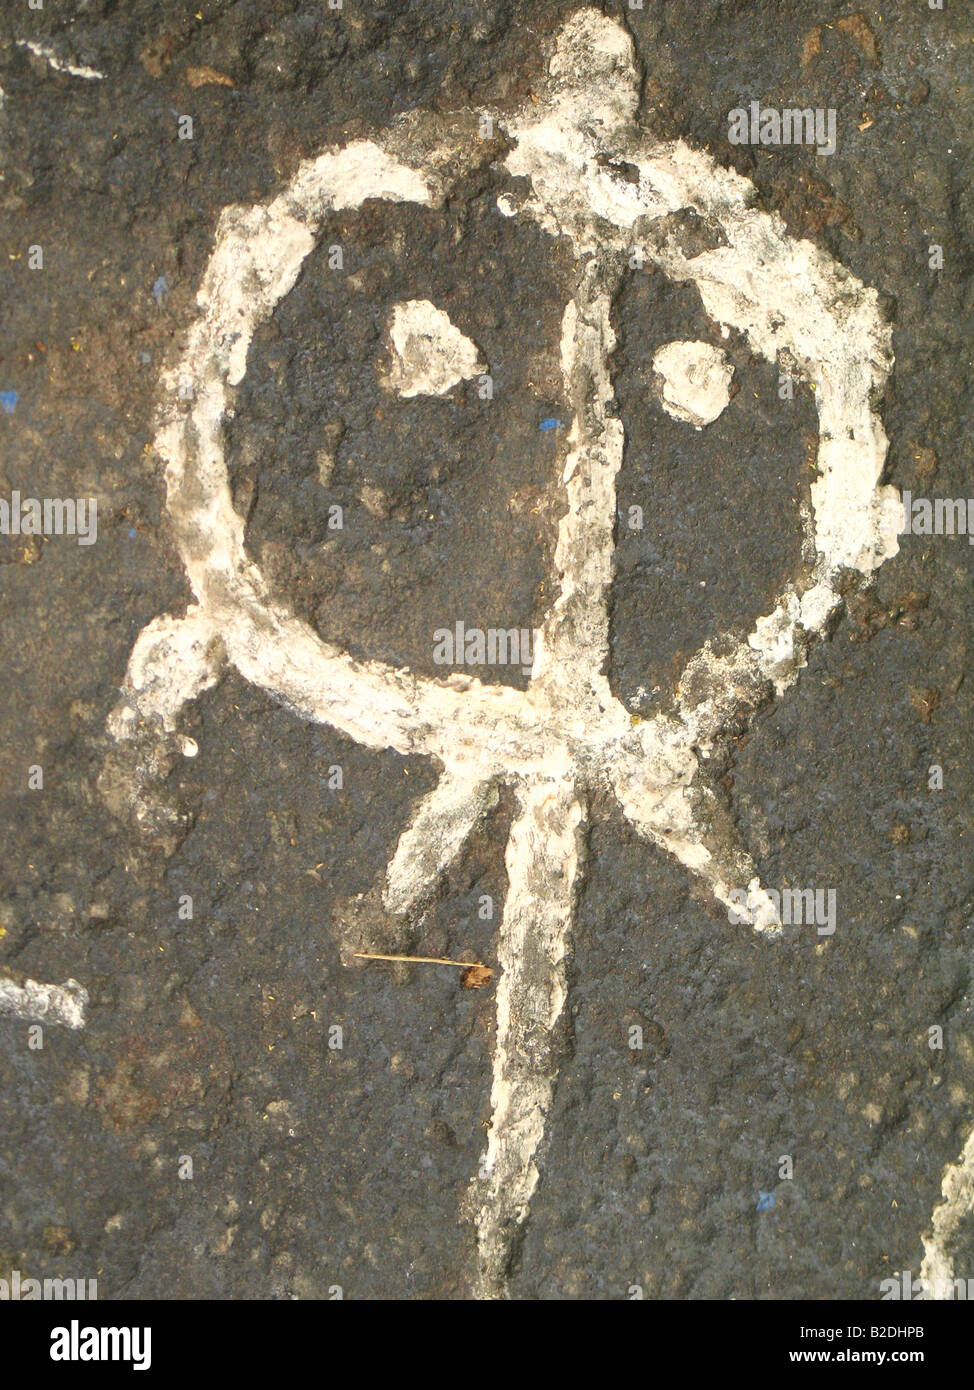 Petroglyphen von Guri, Venezuela. Rupest Kunst. Petroglifos del Guri, Venezuela. Galeria de Arte Nacional, Caracas Stockfoto